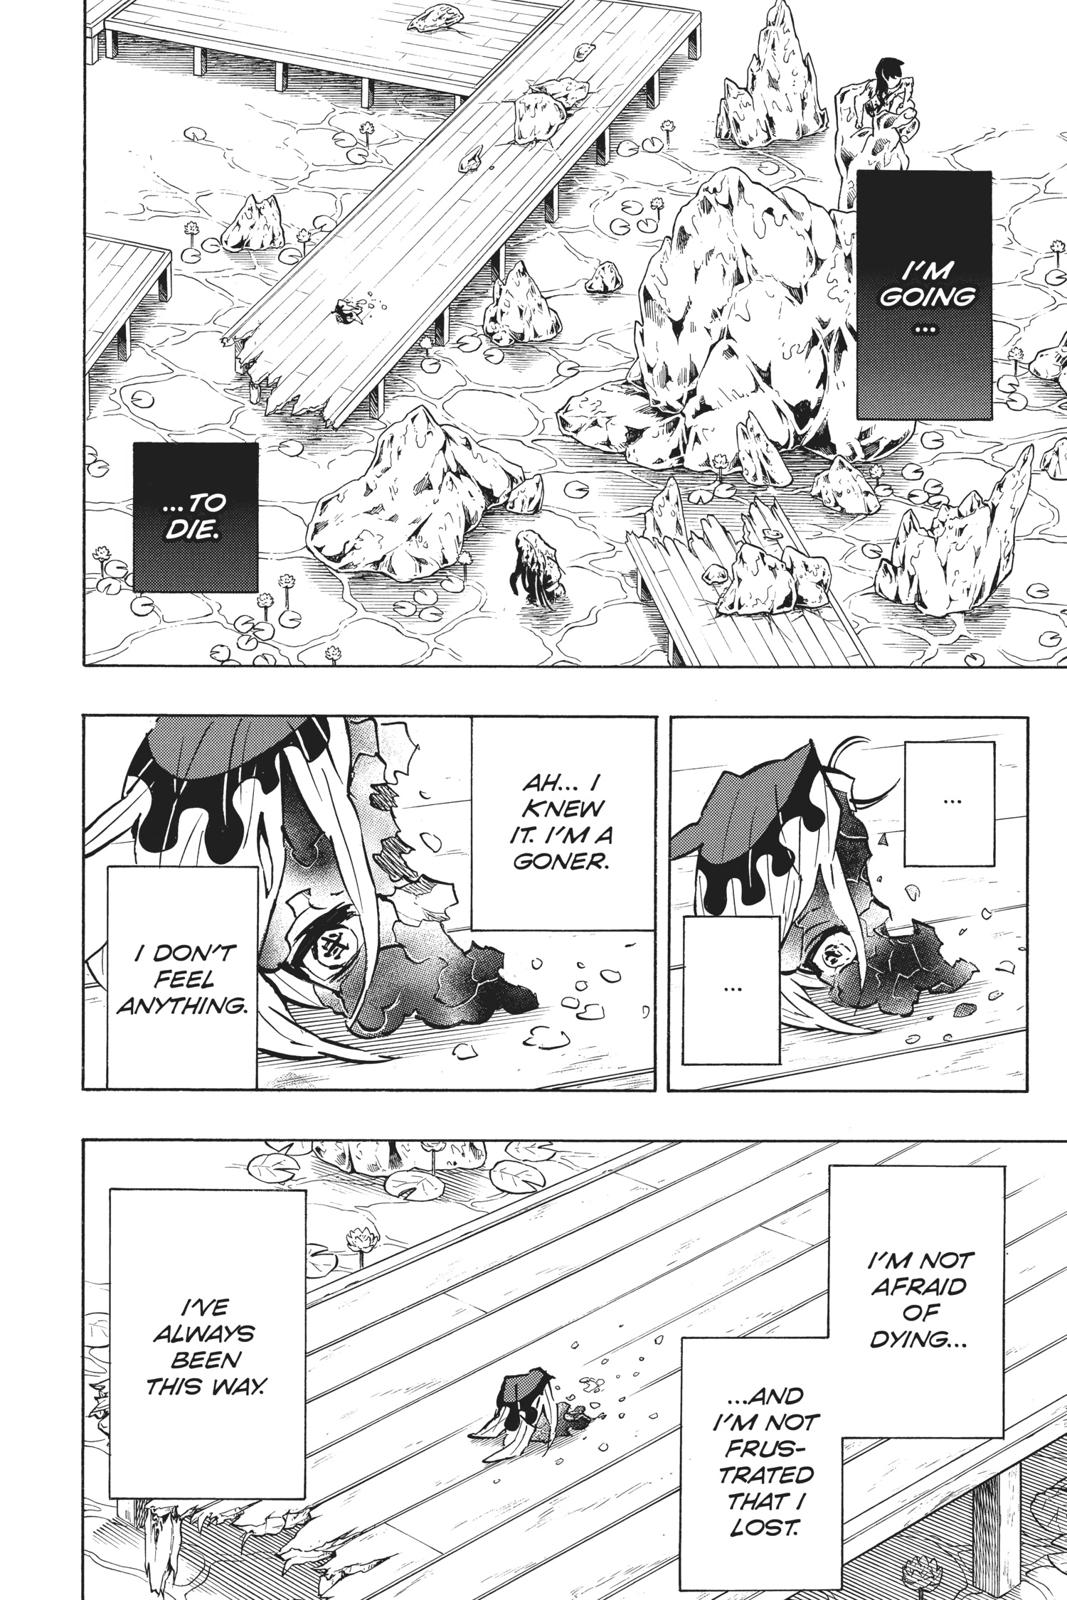 Demon Slayer Manga Manga Chapter - 163 - image 4